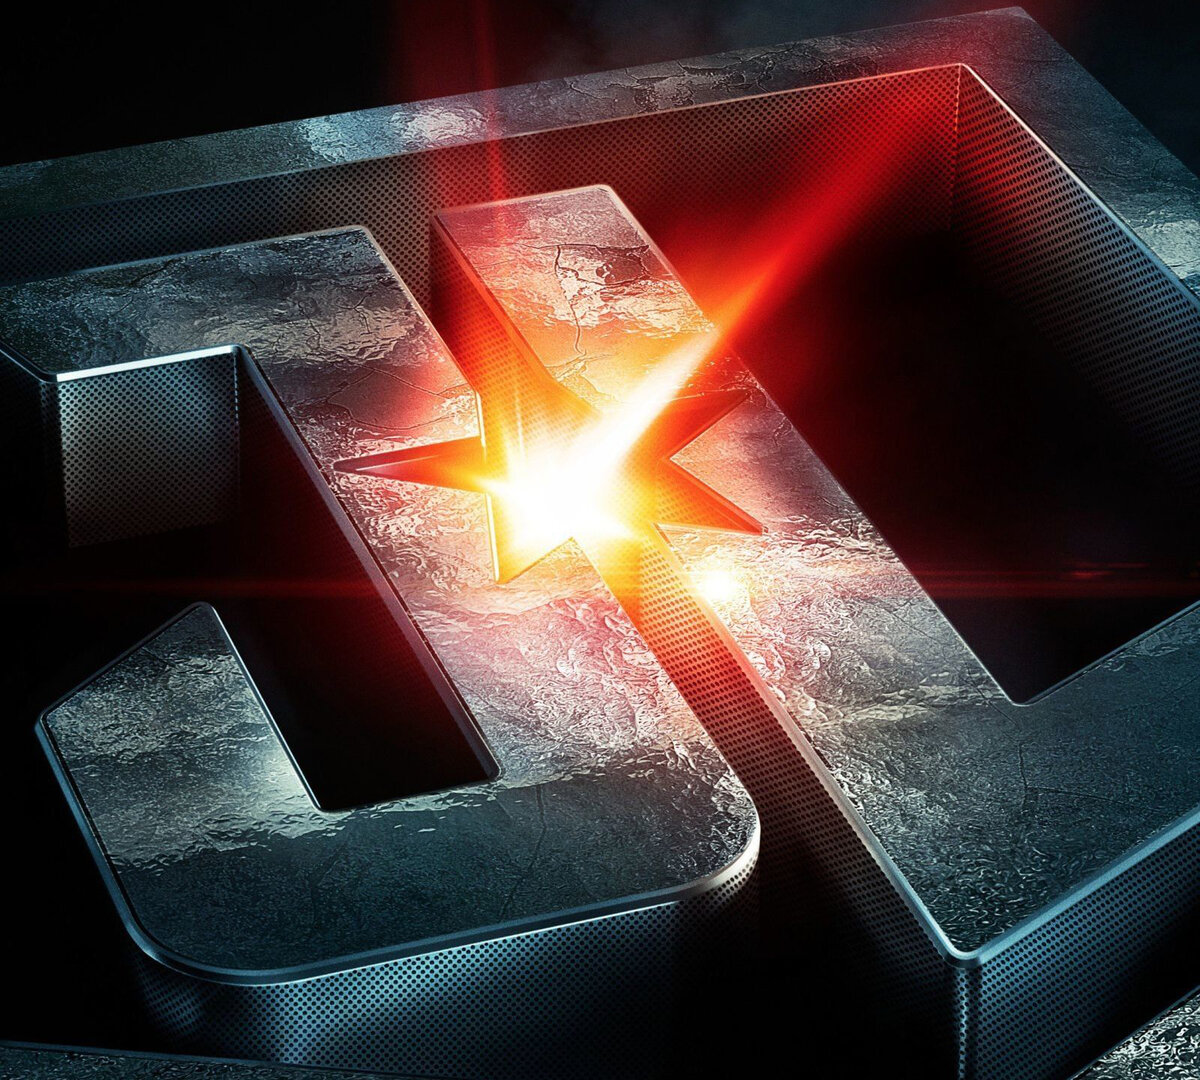 Альтернативный сюжет фильма «Лига Справедливости» («Justice  League» Snyder  Cut) по версии FireFrog  MOVIES, созданный для видео на одноимённый YouTube-канал.